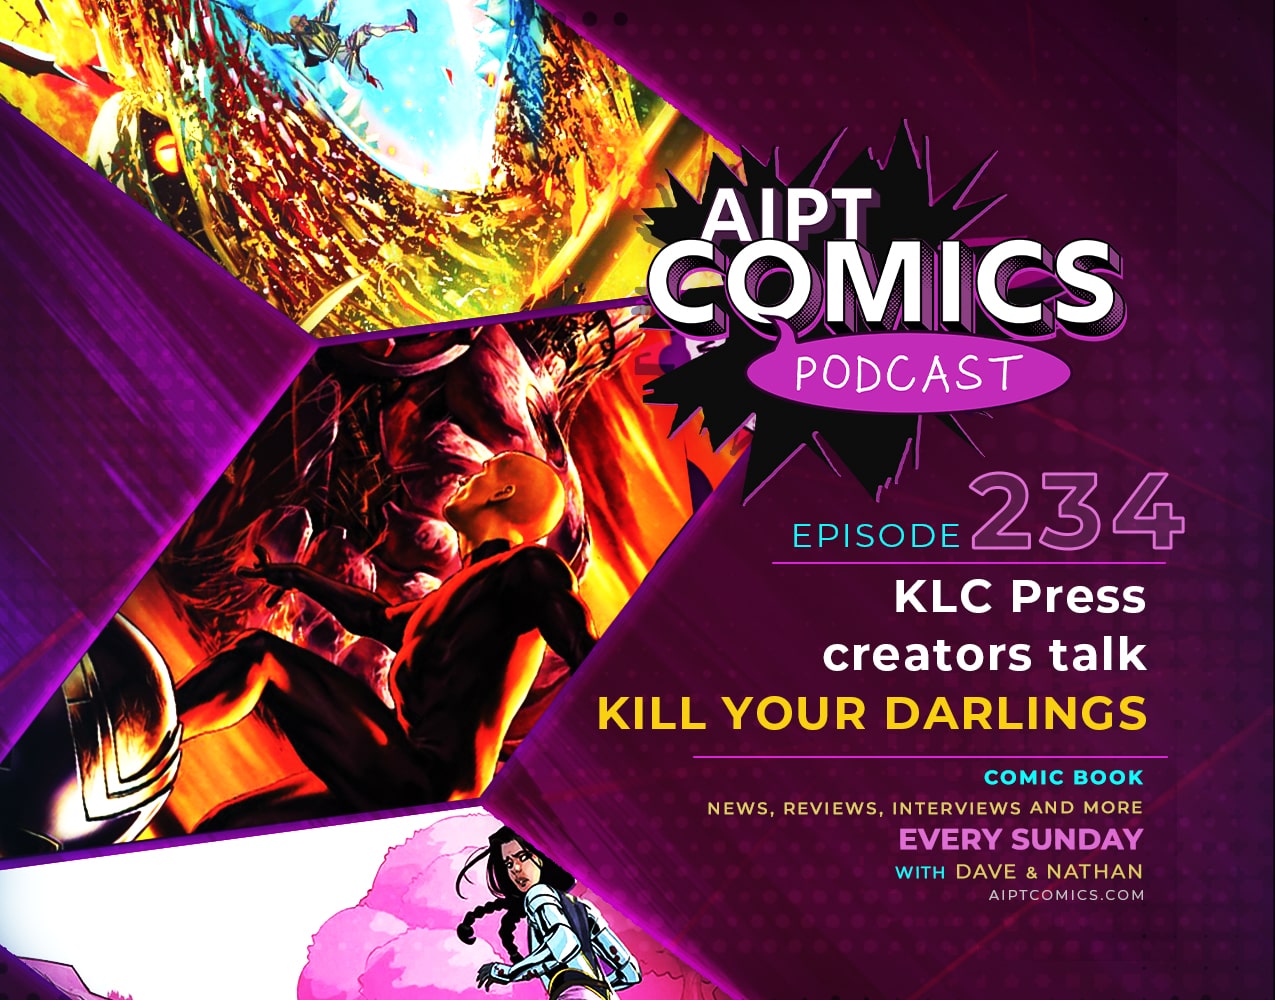 AIPT Comics Podcast episode 234: KLC Press creators talk 'Kill Your Darlings'